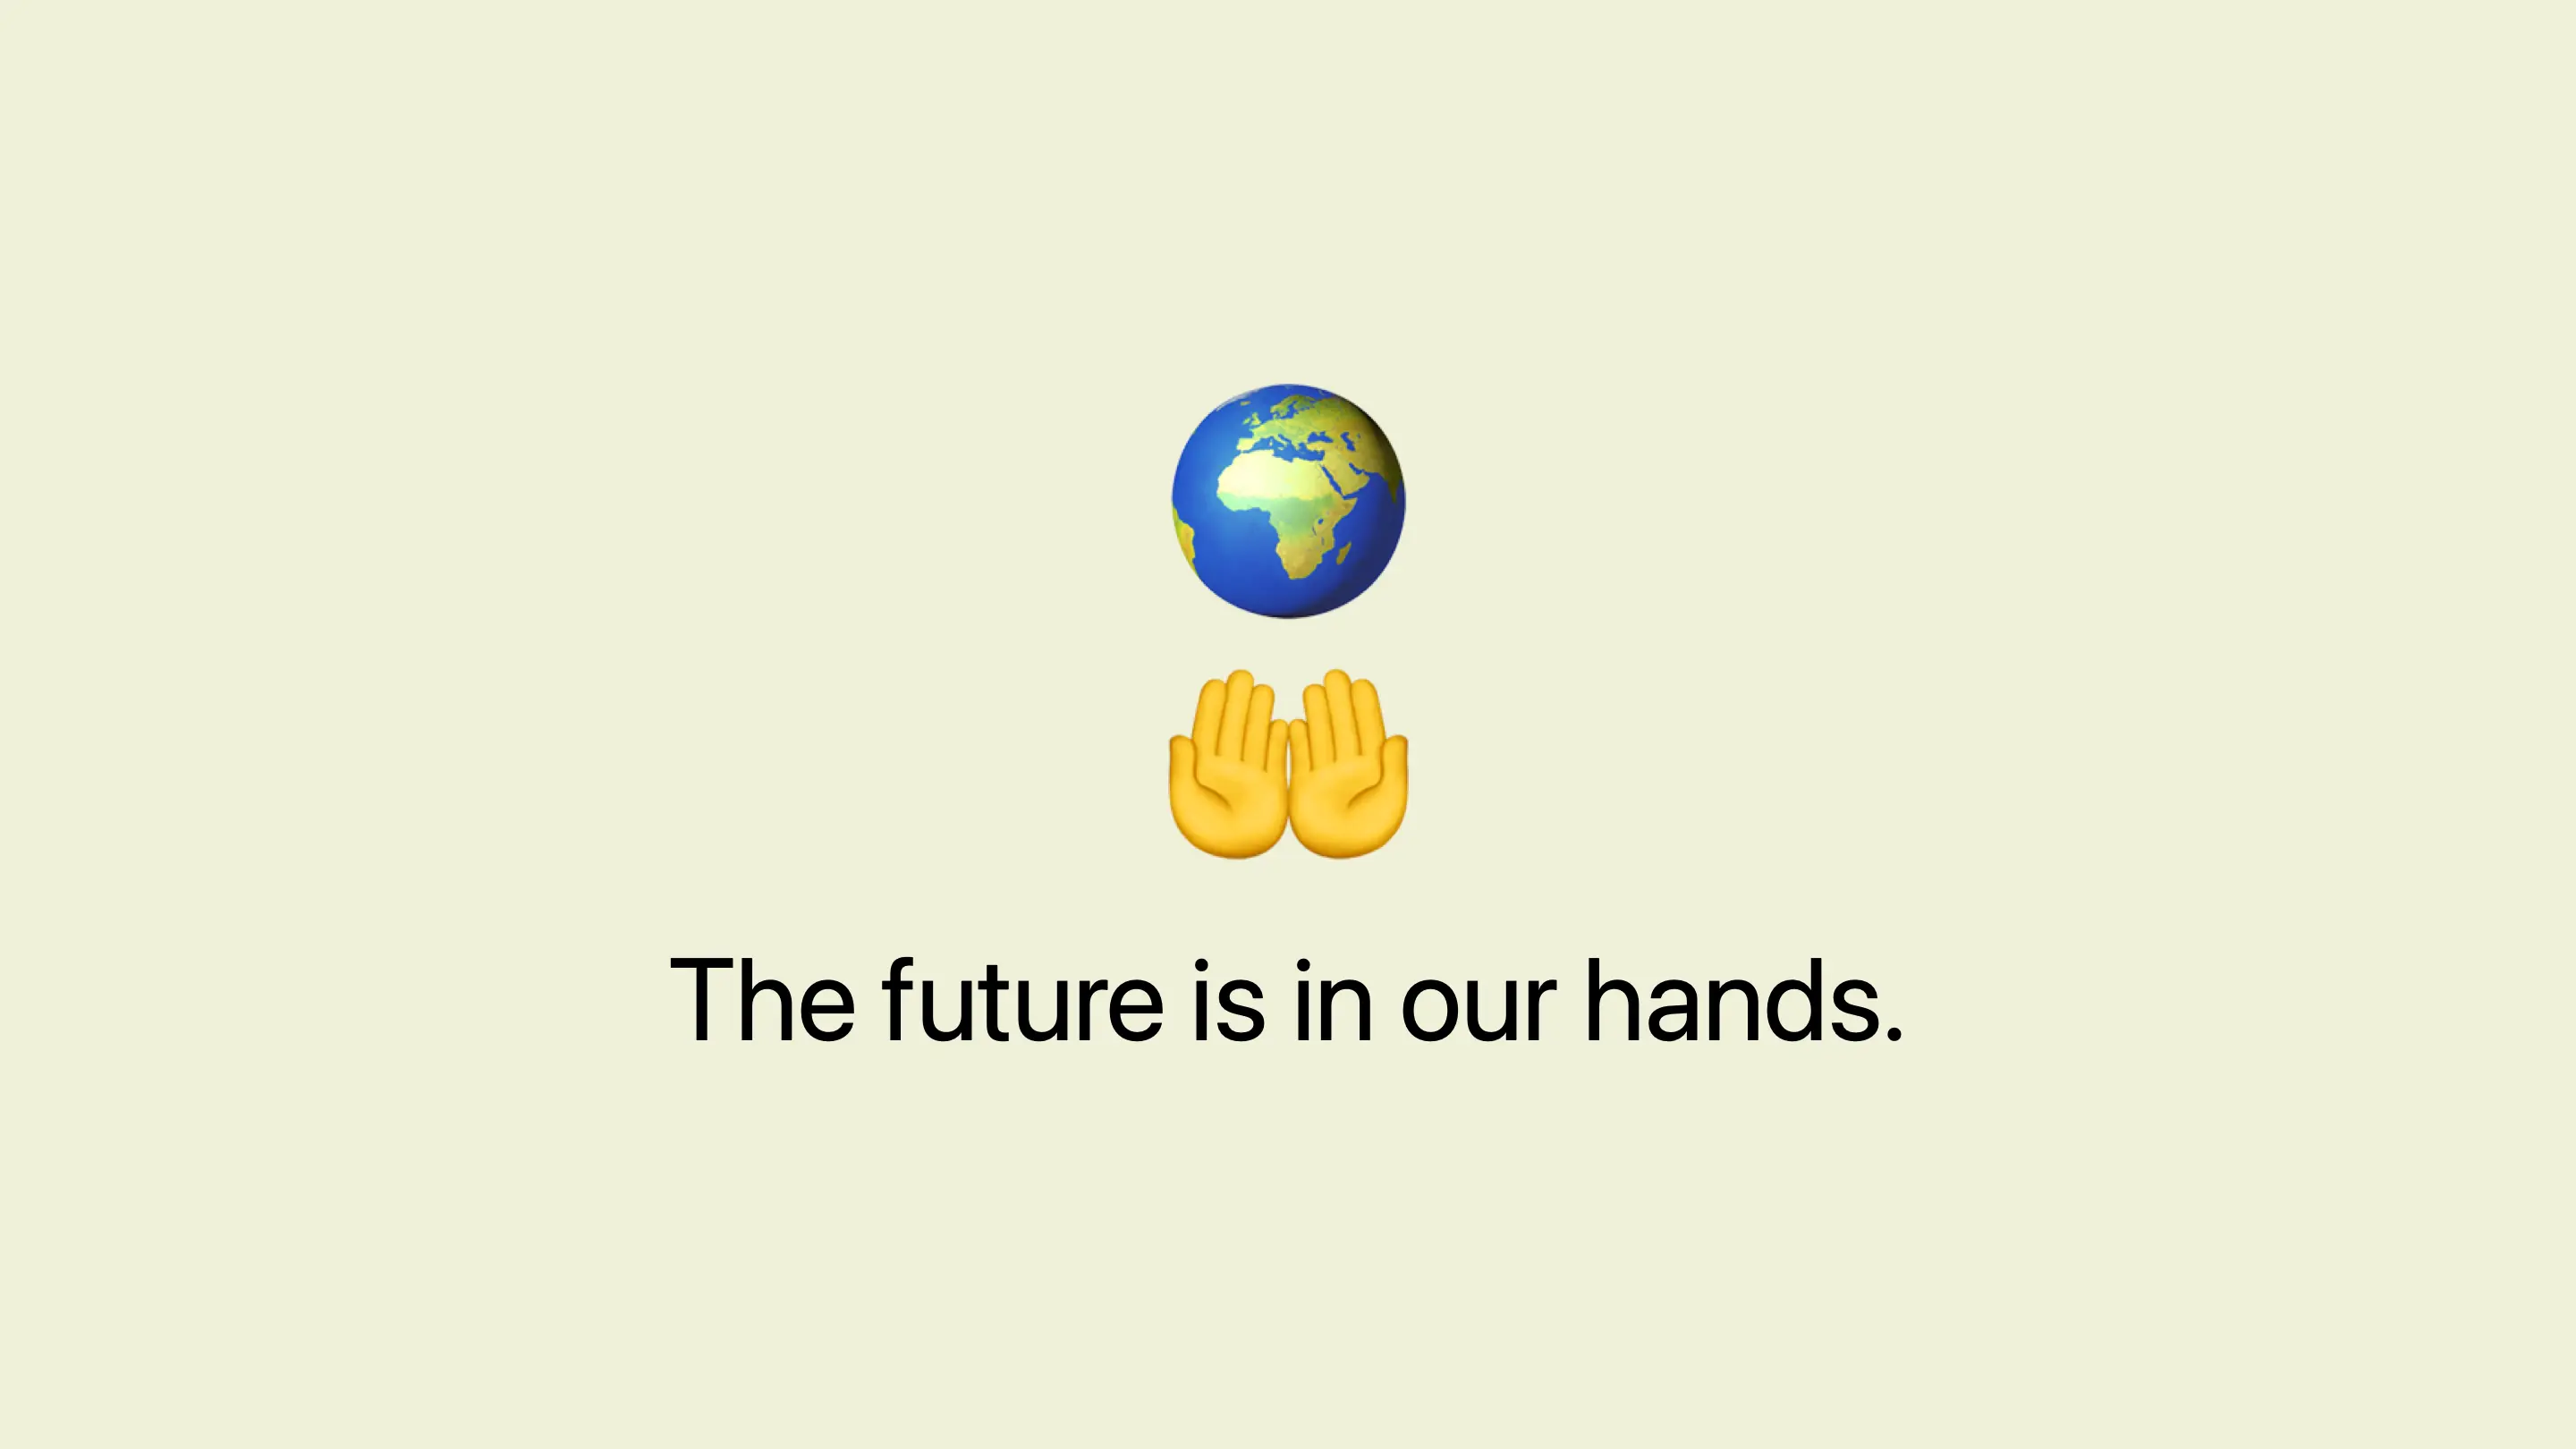 The future is in our hands. Open hands emoji below earth emoji.